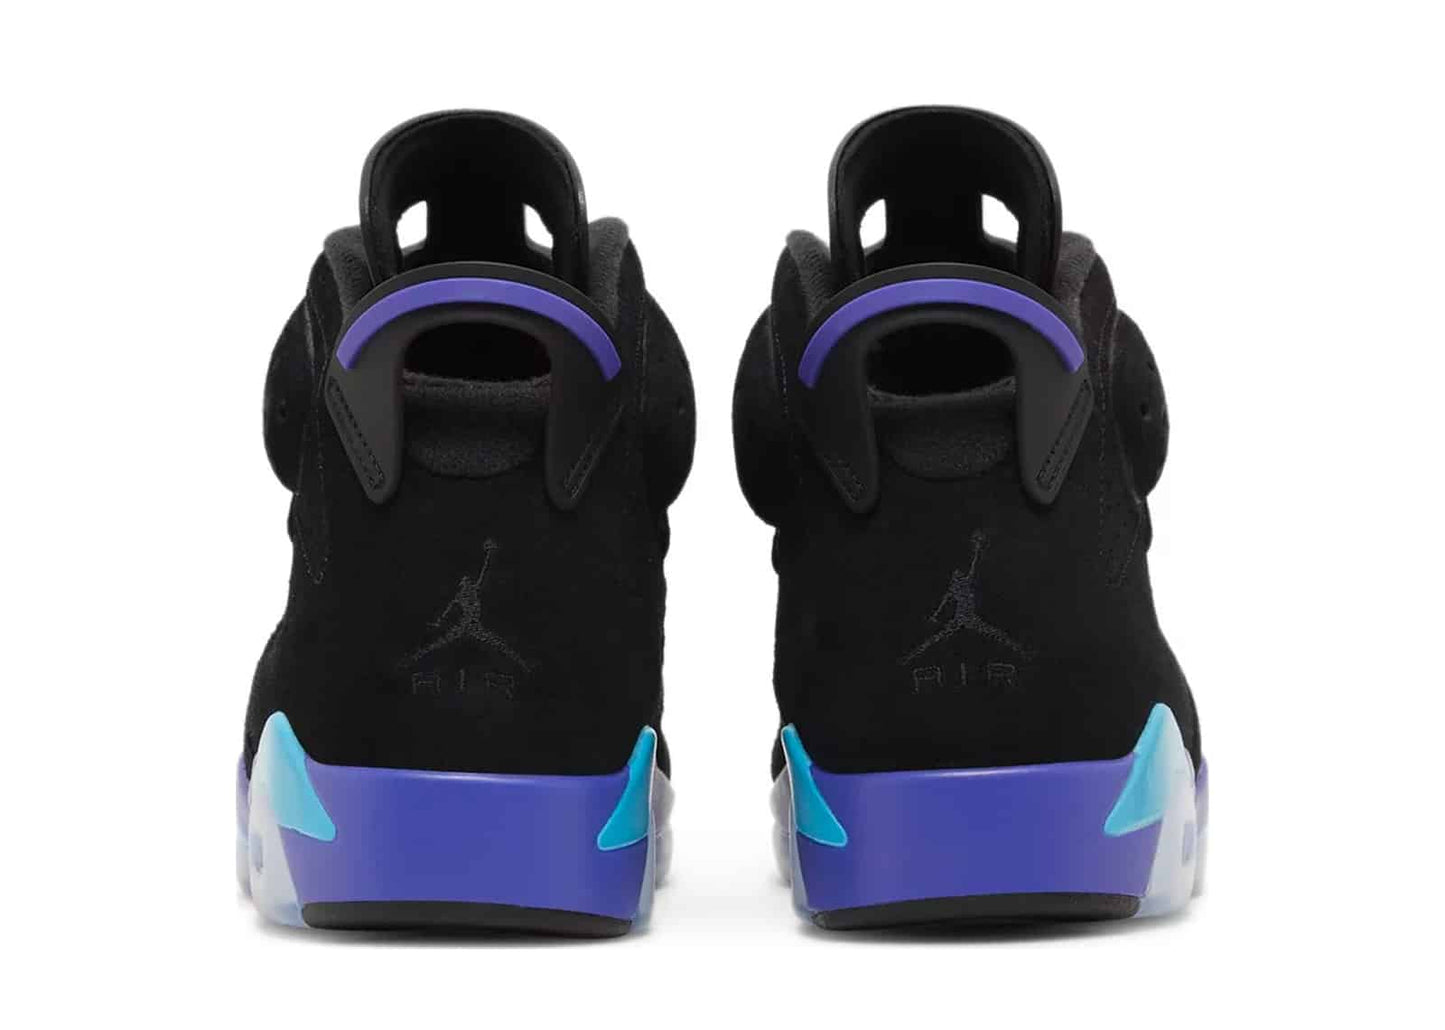 Air Jordan 6 Retro "Aqua" sneakers (Men's)